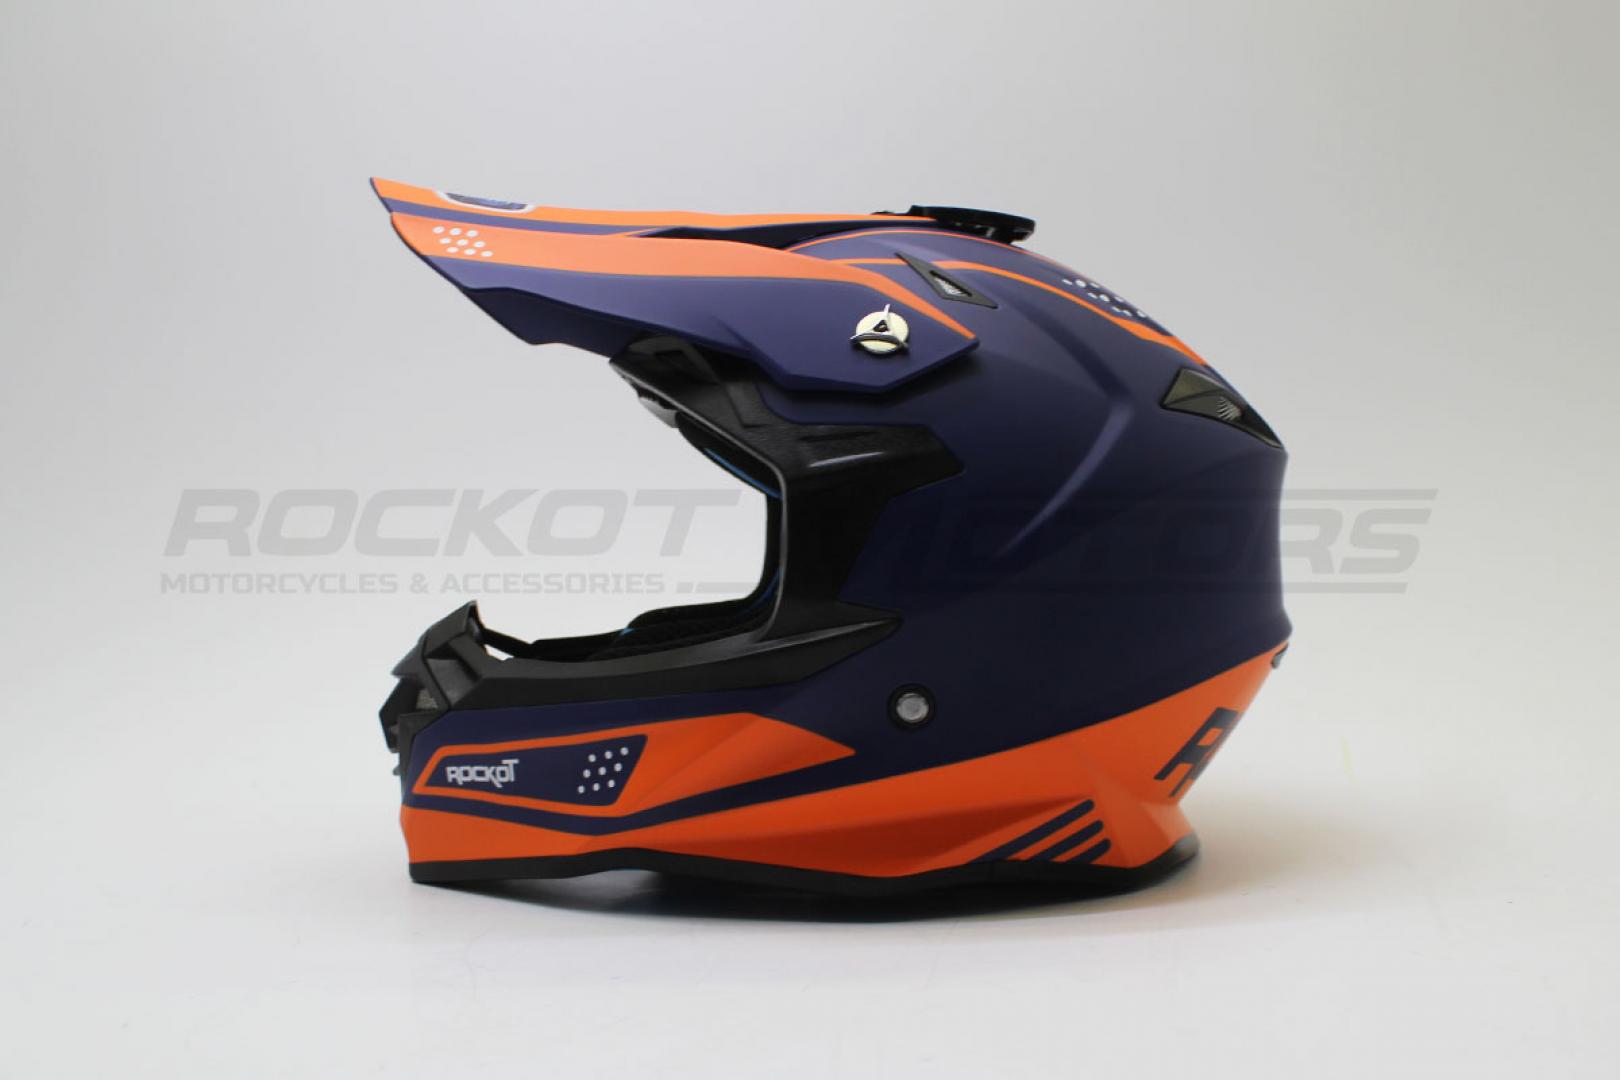 Шлем кроссовый ROCKOT RM-216 Soul (L, XL) (оранжевый/синий матовый)